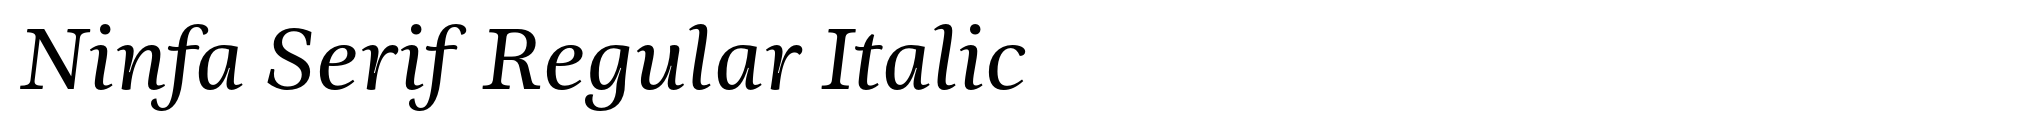 Ninfa Serif Regular Italic image